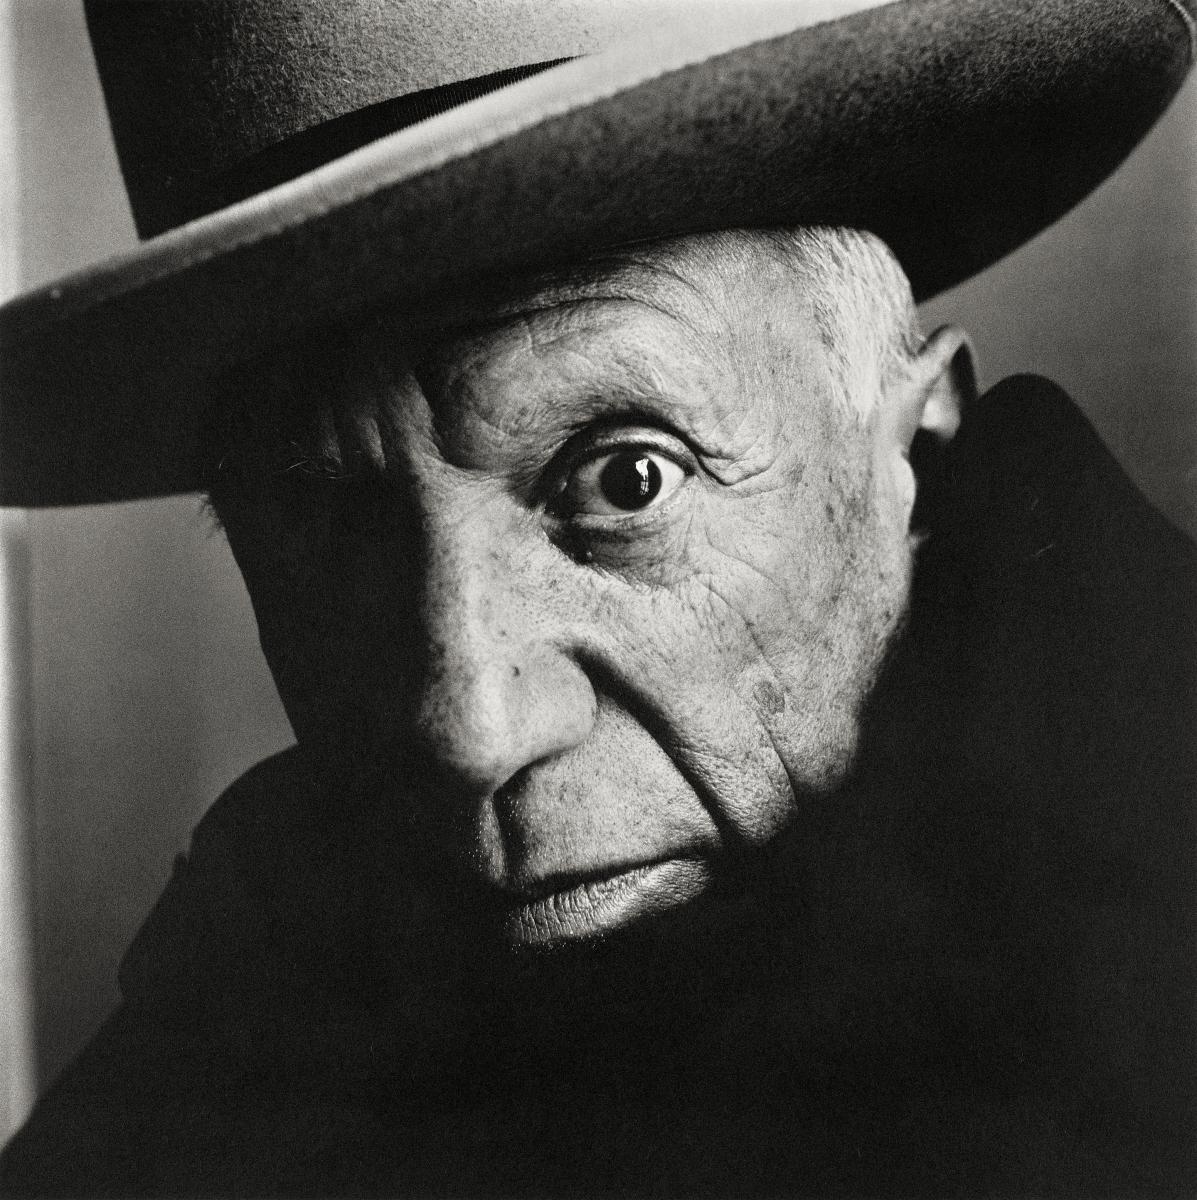 Noir et Blanc de Pablo Picasso réalisé par Irving Penn